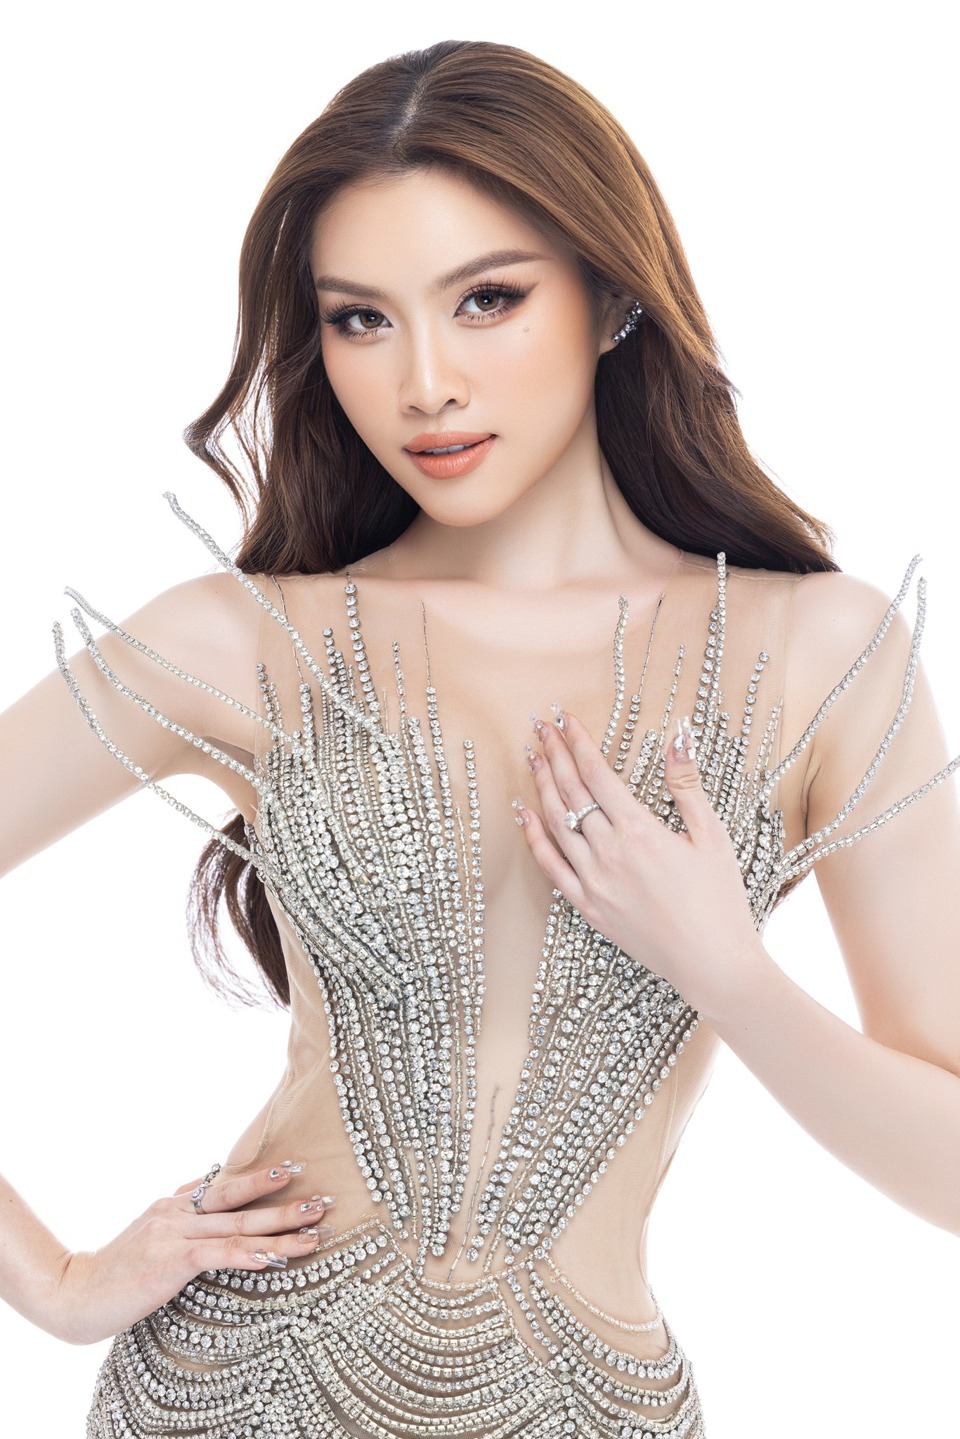 "Bánh tráng" sẽ cùng Thanh Thanh Huyền thi Miss Charm 2023 - Ảnh 5